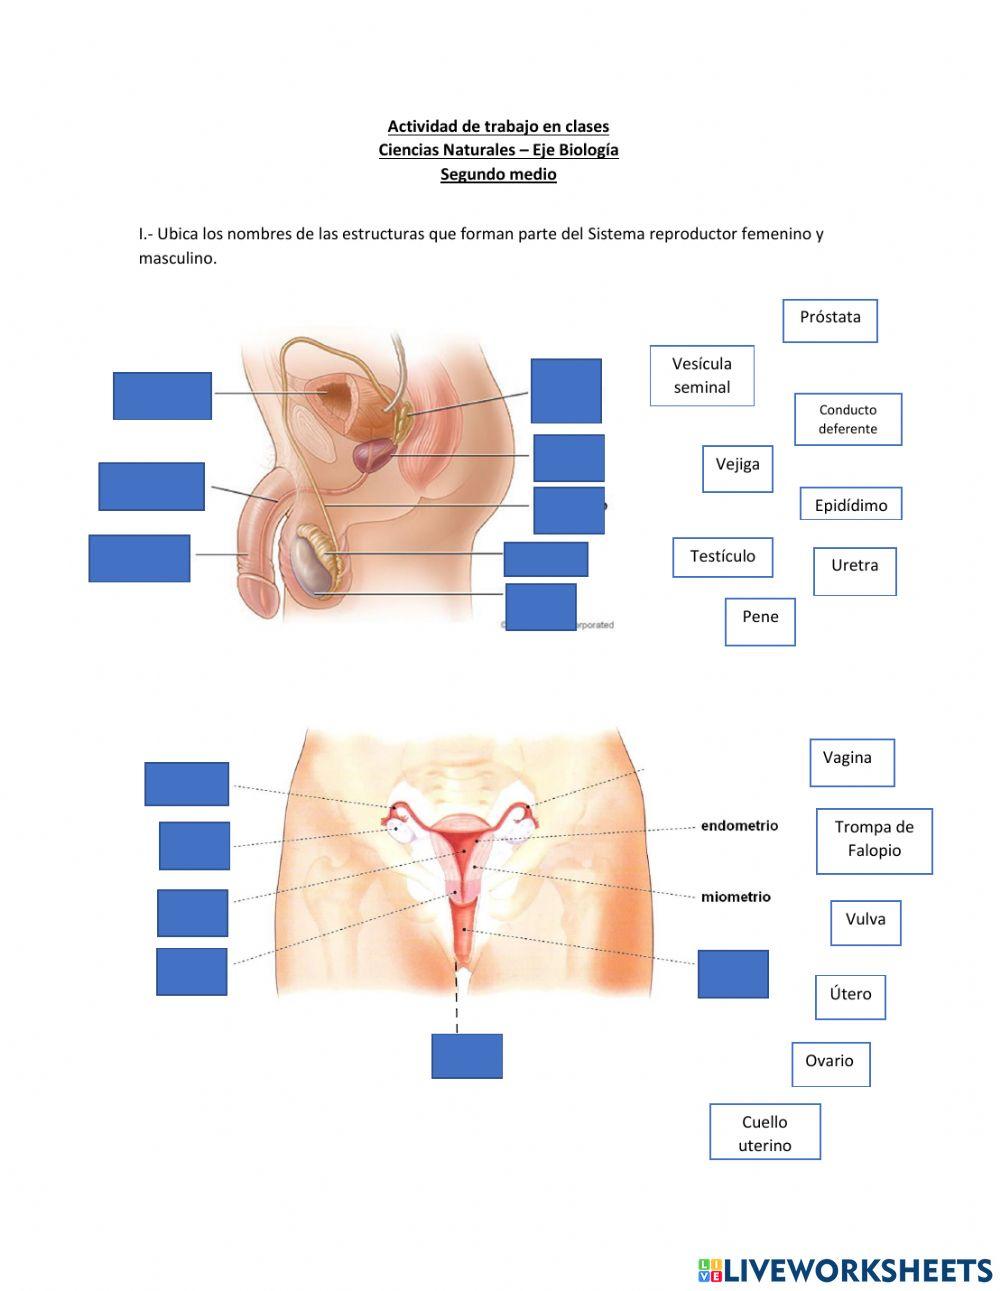 Anatomía y funcionamiento del sistema reproductor